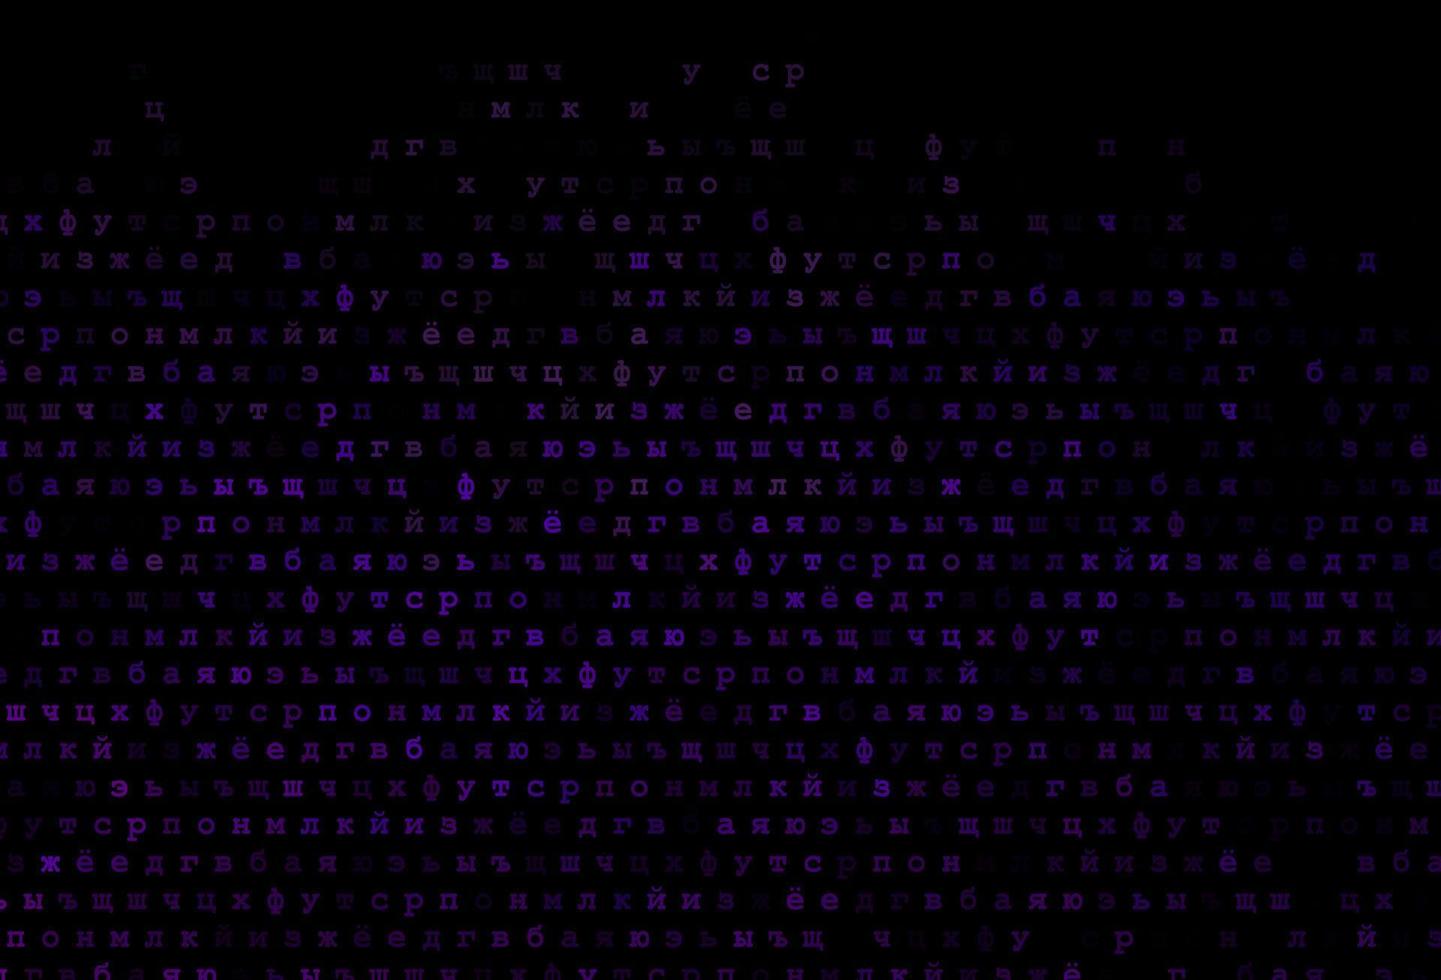 donker paars vector patroon met abc symbolen.